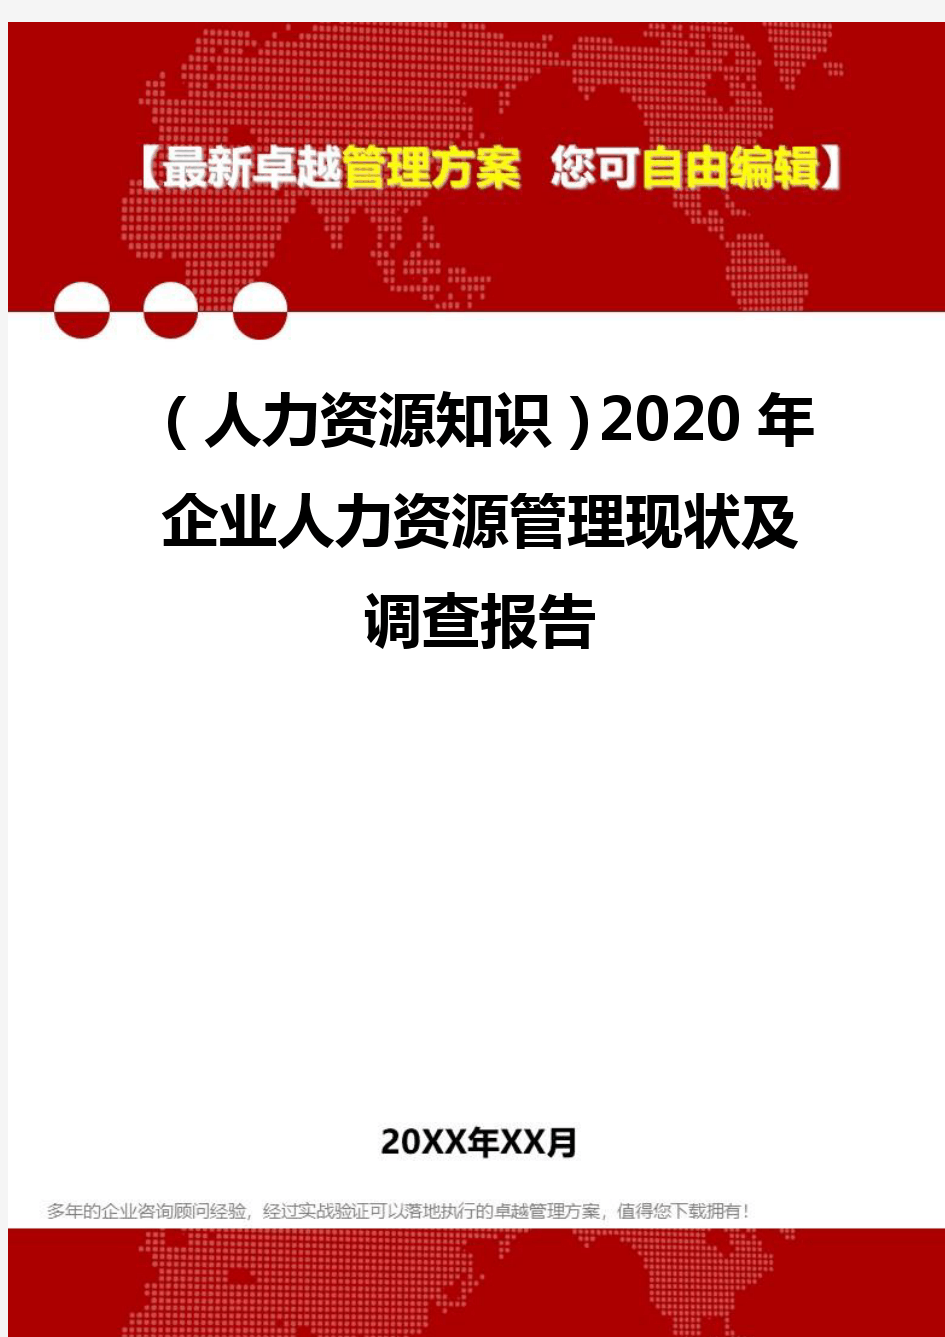 (人力资源知识)2020年企业人力资源管理现状及调查报告